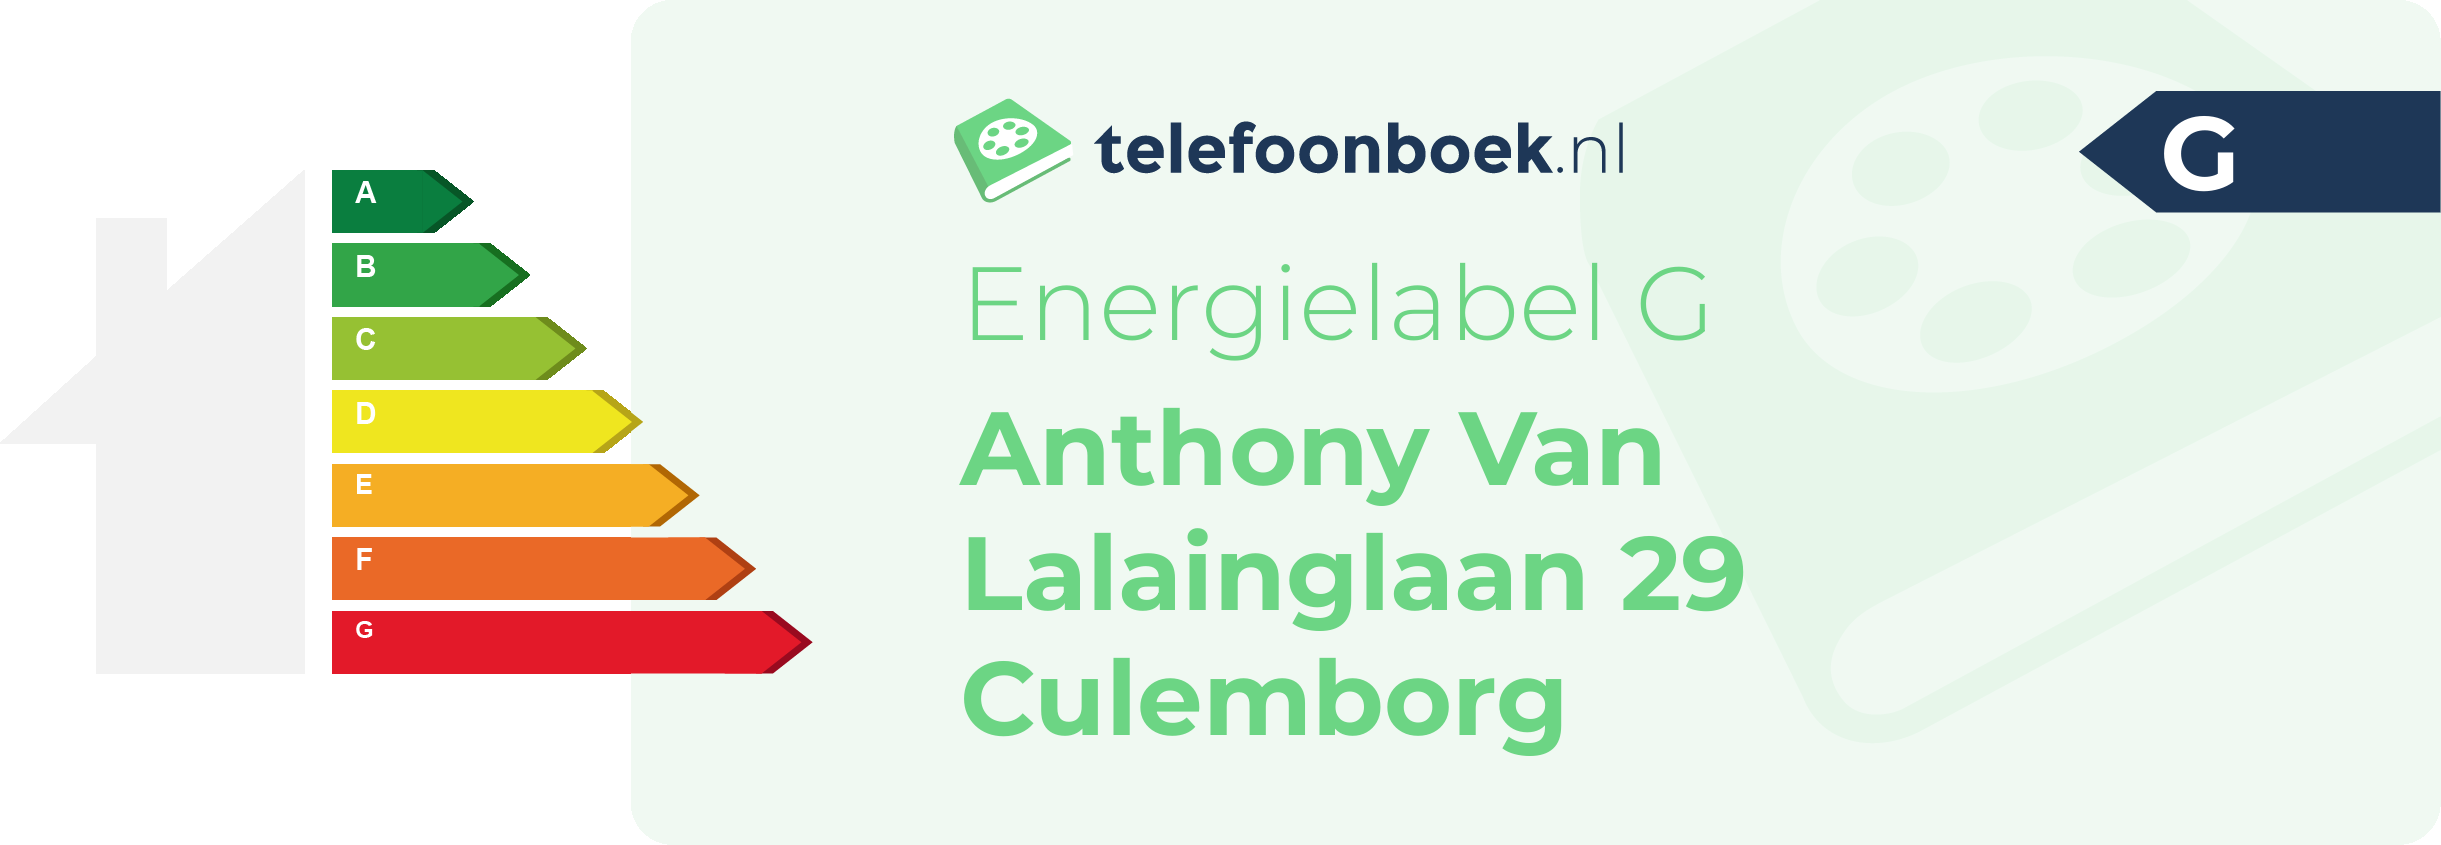 Energielabel Anthony Van Lalainglaan 29 Culemborg